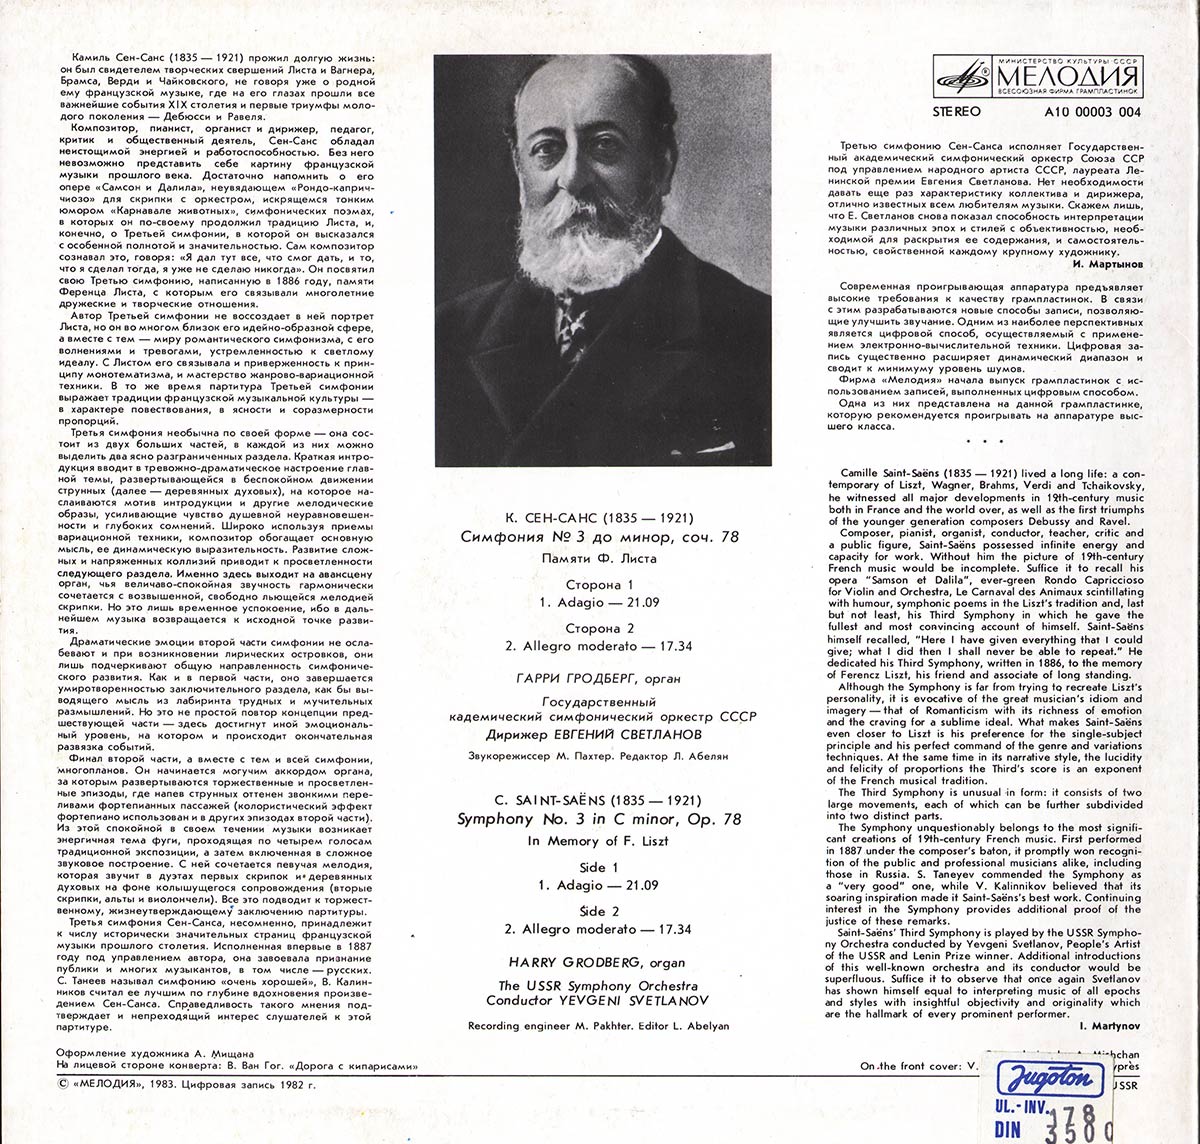 К. СЕН-САНС (1835-1921): Симфония № 3 до минор, соч. 78 (Памяти Ф. Листа)